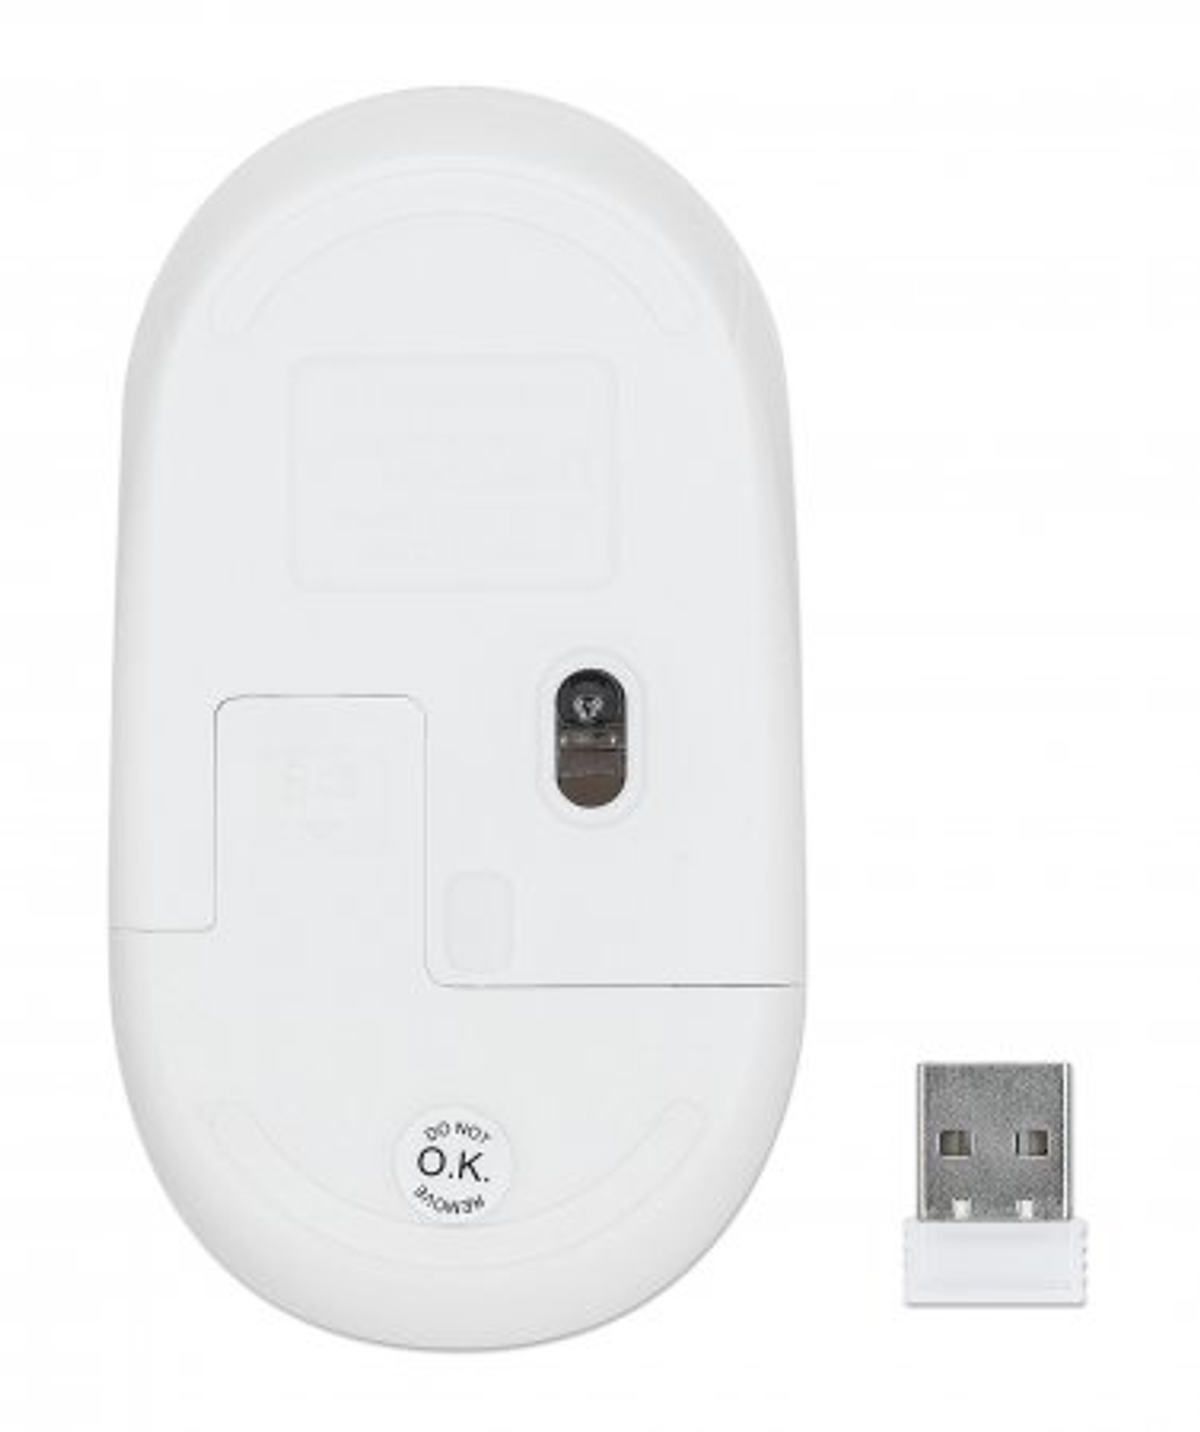 MANHATTAN MANHATTAN Performance Maus, Mäuse USB-Maus / Kabellose weiß Ausgabe III Eingabe